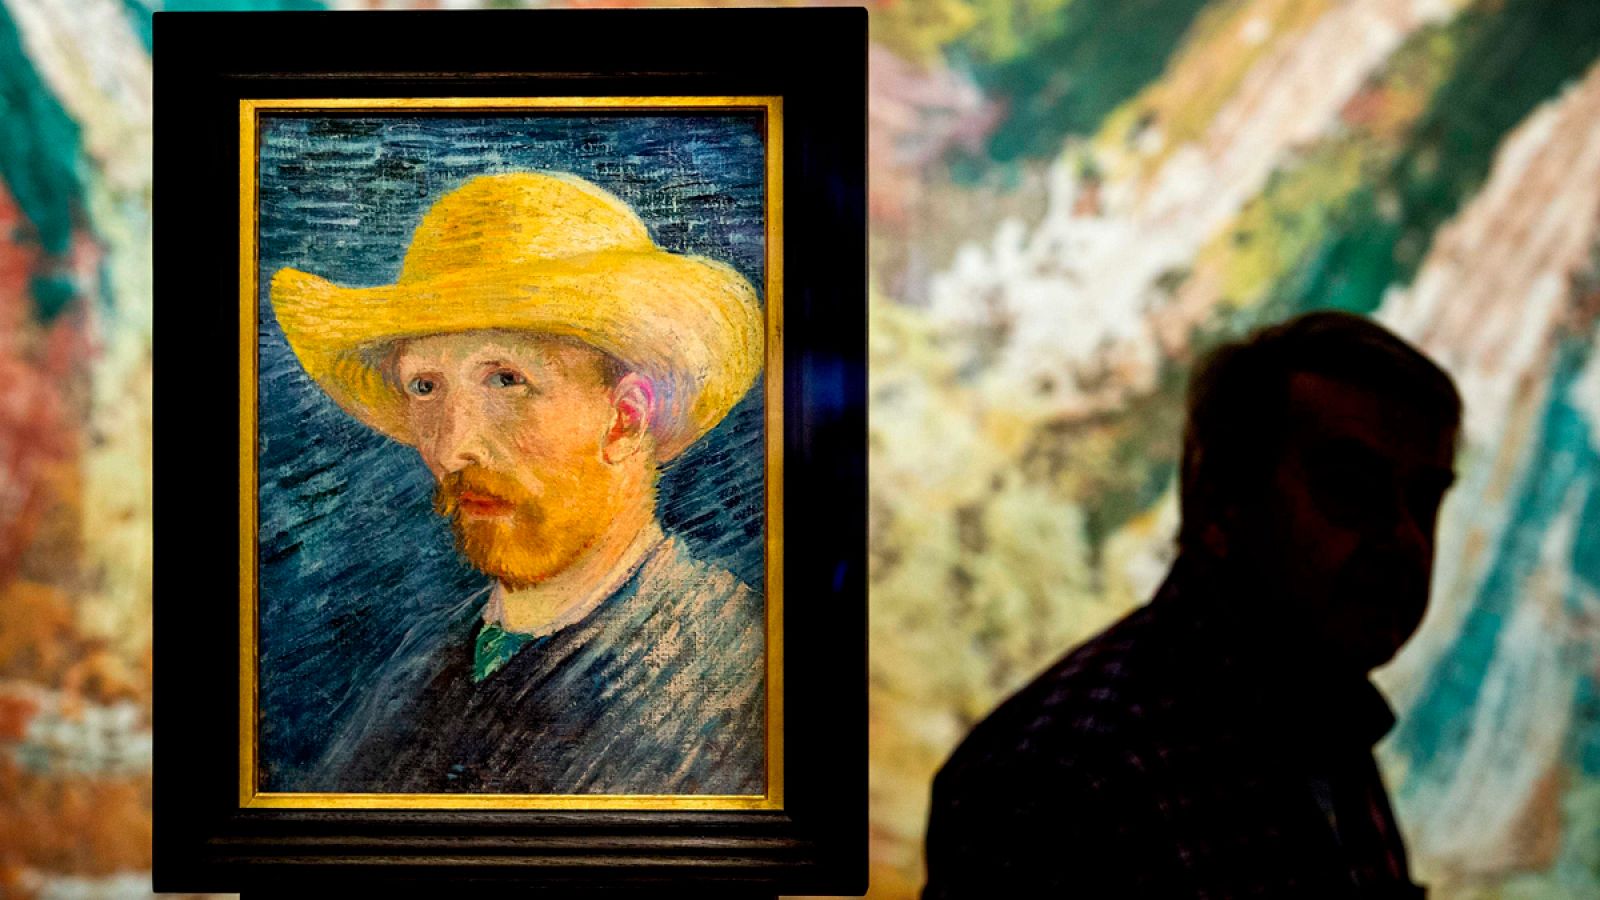 Imagen de archivo de la obra "Autorretrato con sombrero de paja" del pintor holandés Vincent van Gogh, en el museo Van Gogh, Amsterdam.